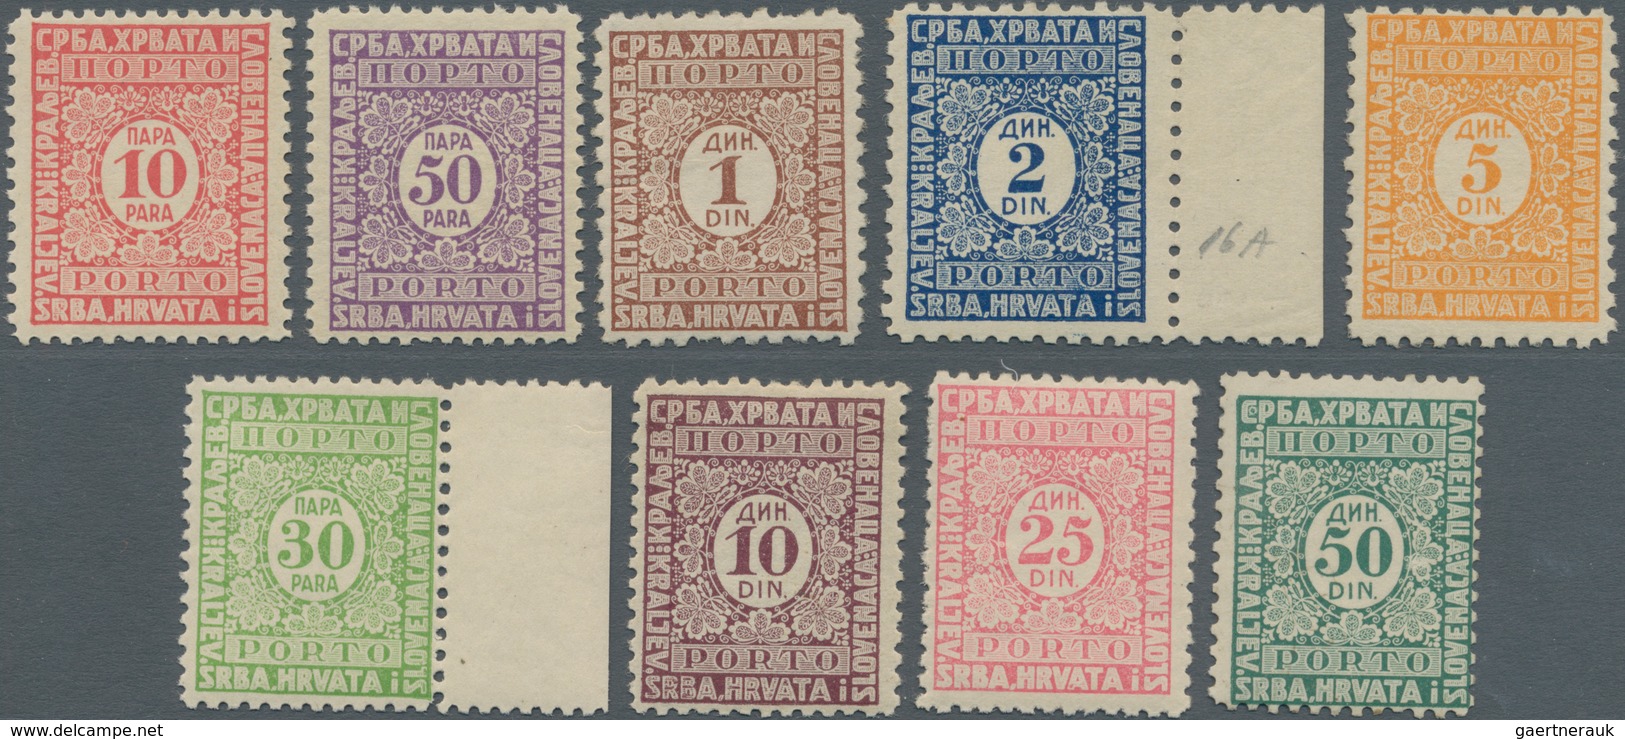 Jugoslawien - Portomarken: 1923 (July) - 31. POSTAGE DUE. As 1st Issue Of 1921 But Prepared From New - Portomarken